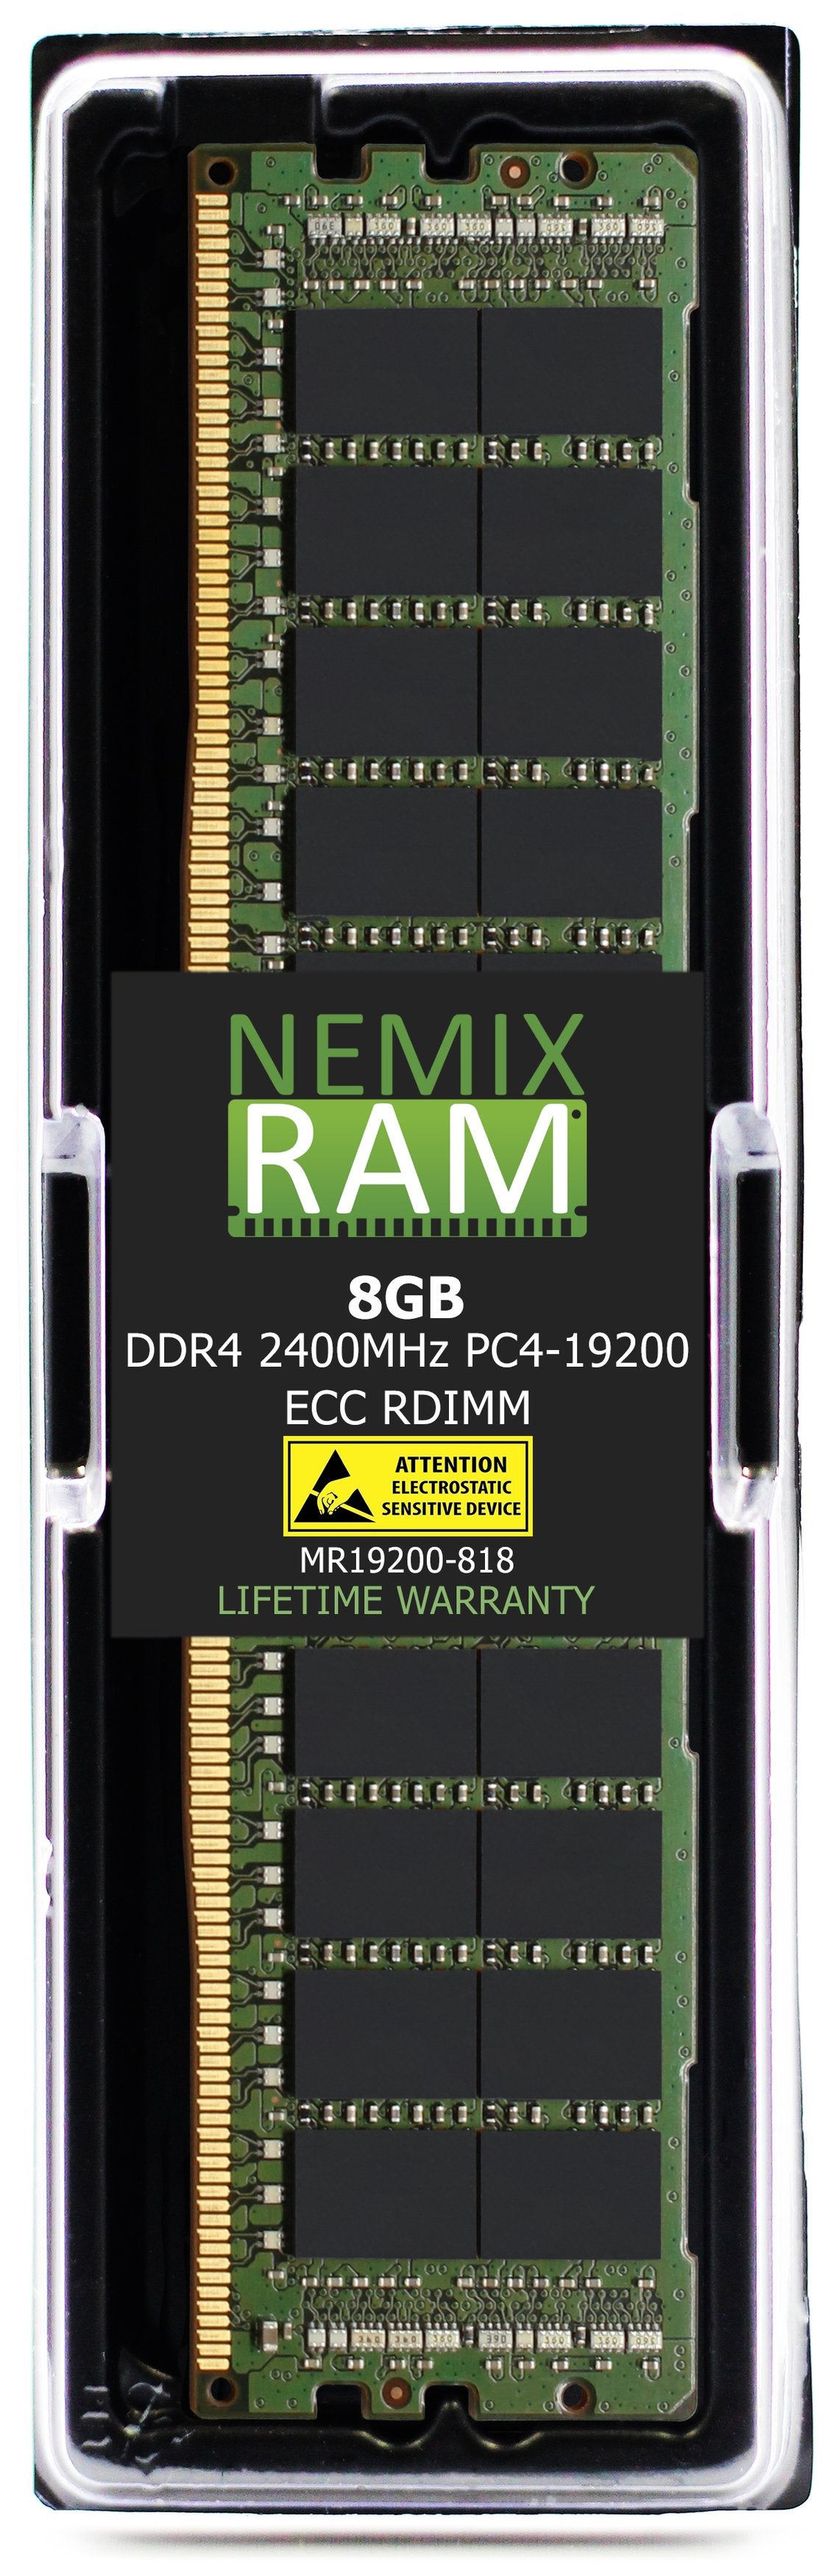 Hynix HMA81GR7AFR8N-UH 8GB DDR4 2400MHZ PC4-19200 RDIMM Compatible Memory Module